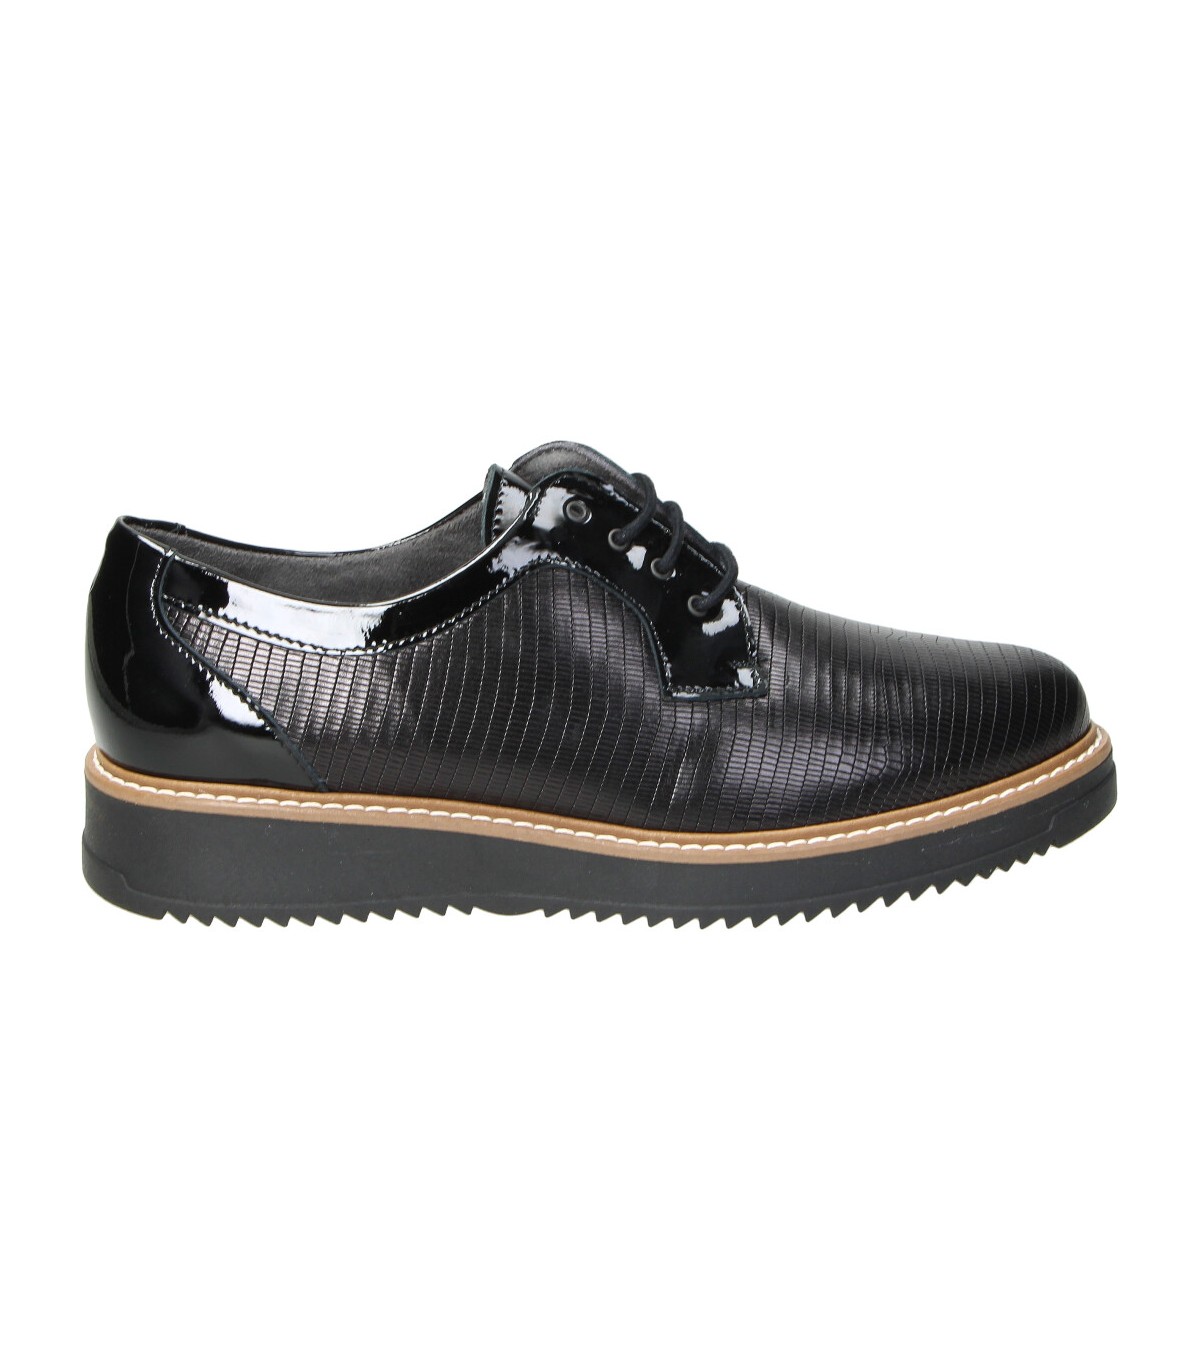 Zapato de mujer Pitillos en negro 2502 Color NEGRO Talla 40